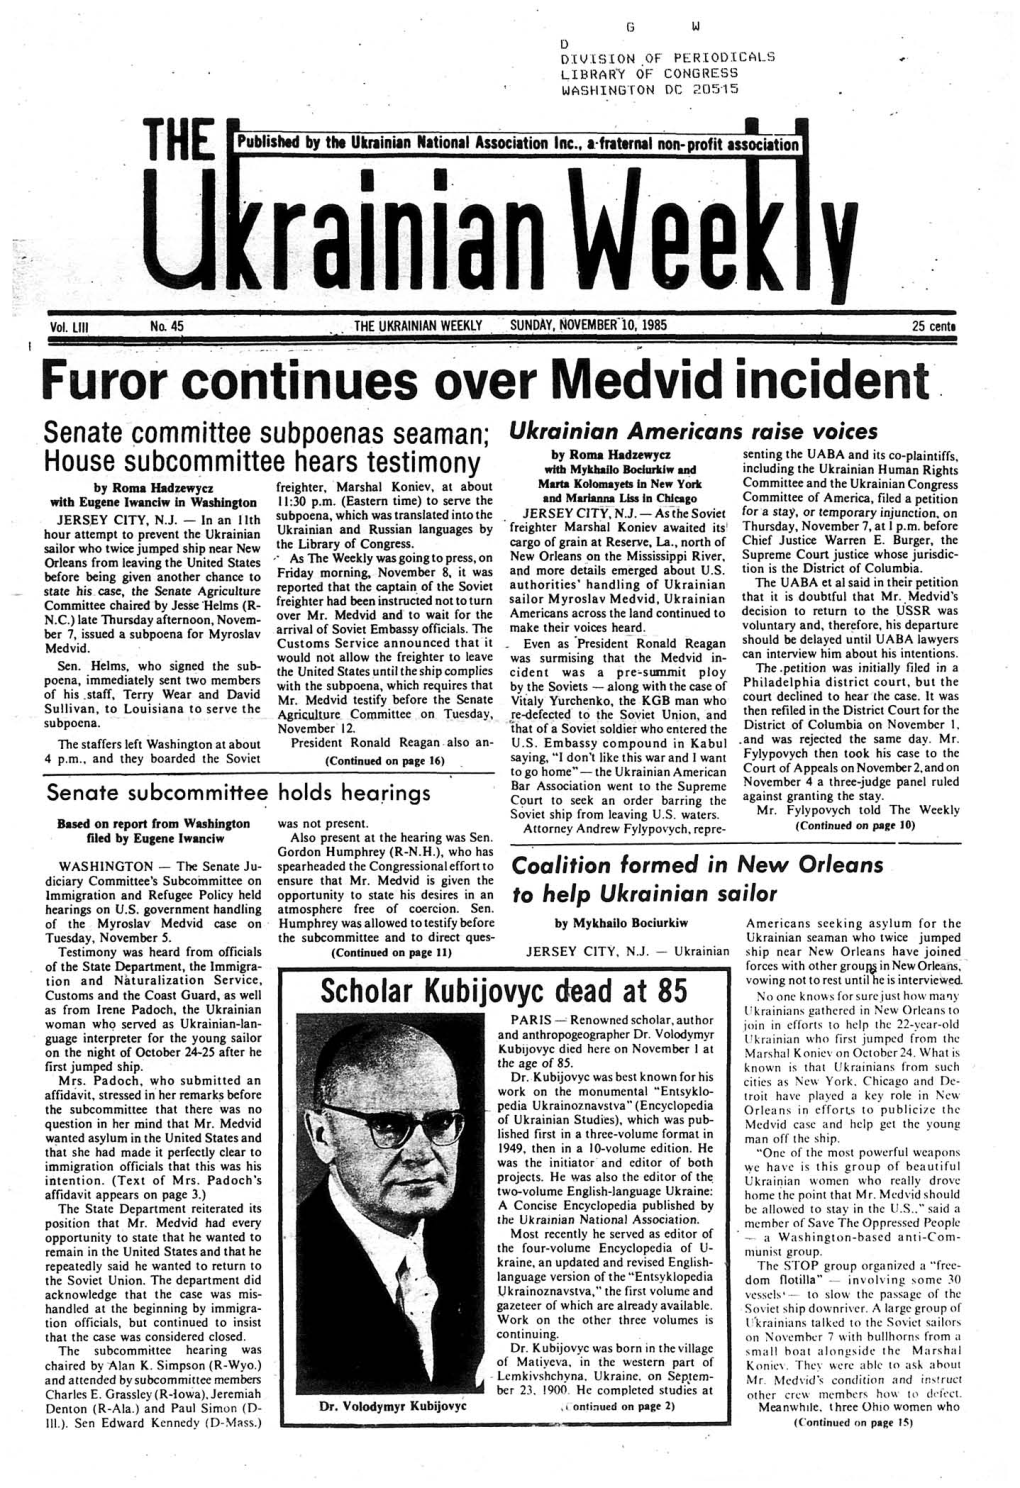 The Ukrainian Weekly 1985